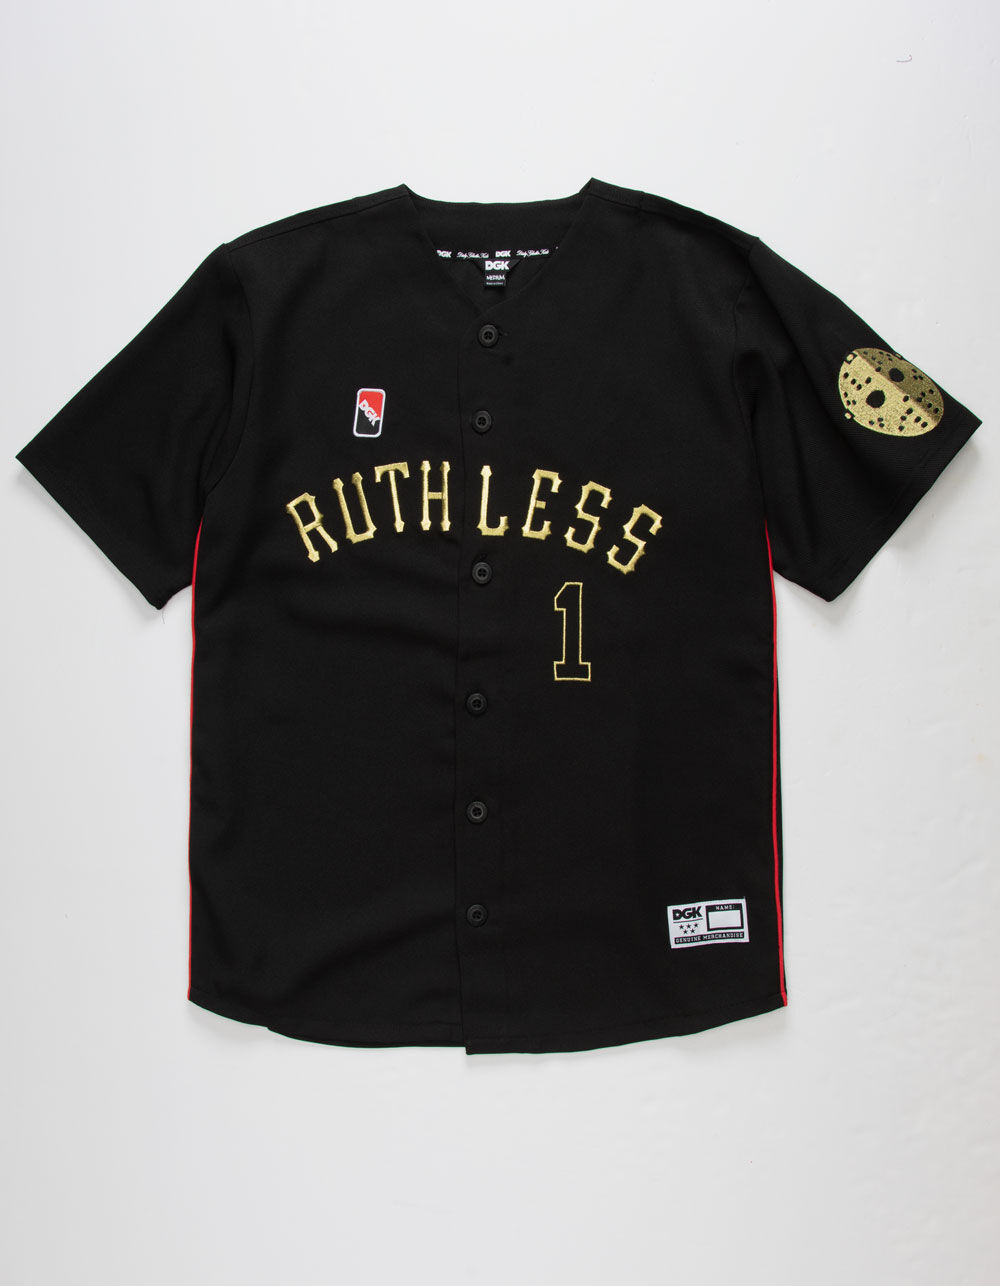 Ruthless Baseball Jersey– DGK Official Website